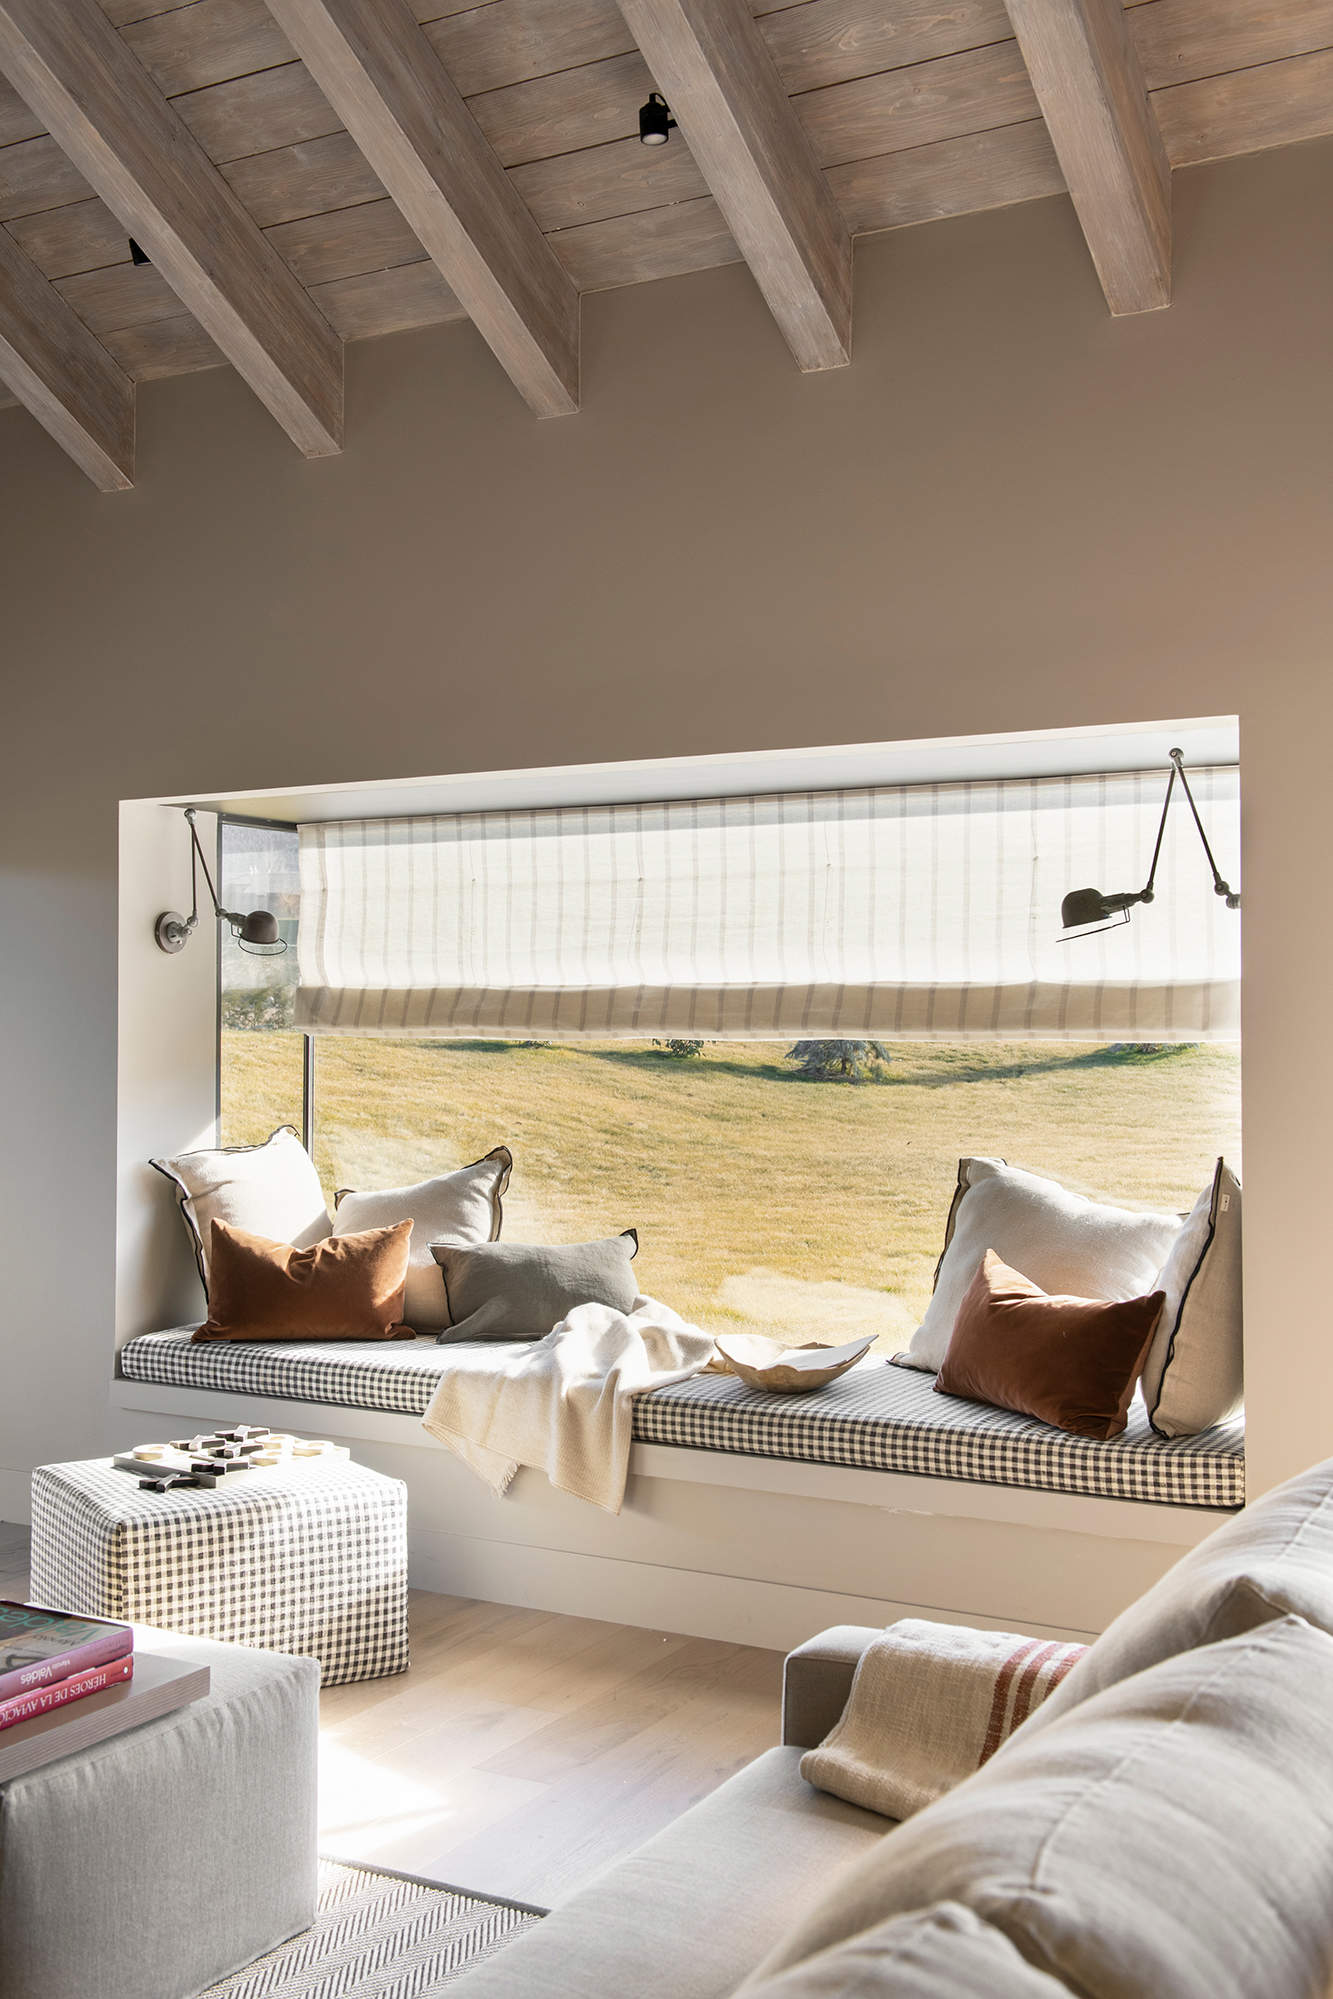 Muebles bajo la ventana: Integración en el paisaje desde dentro de casa